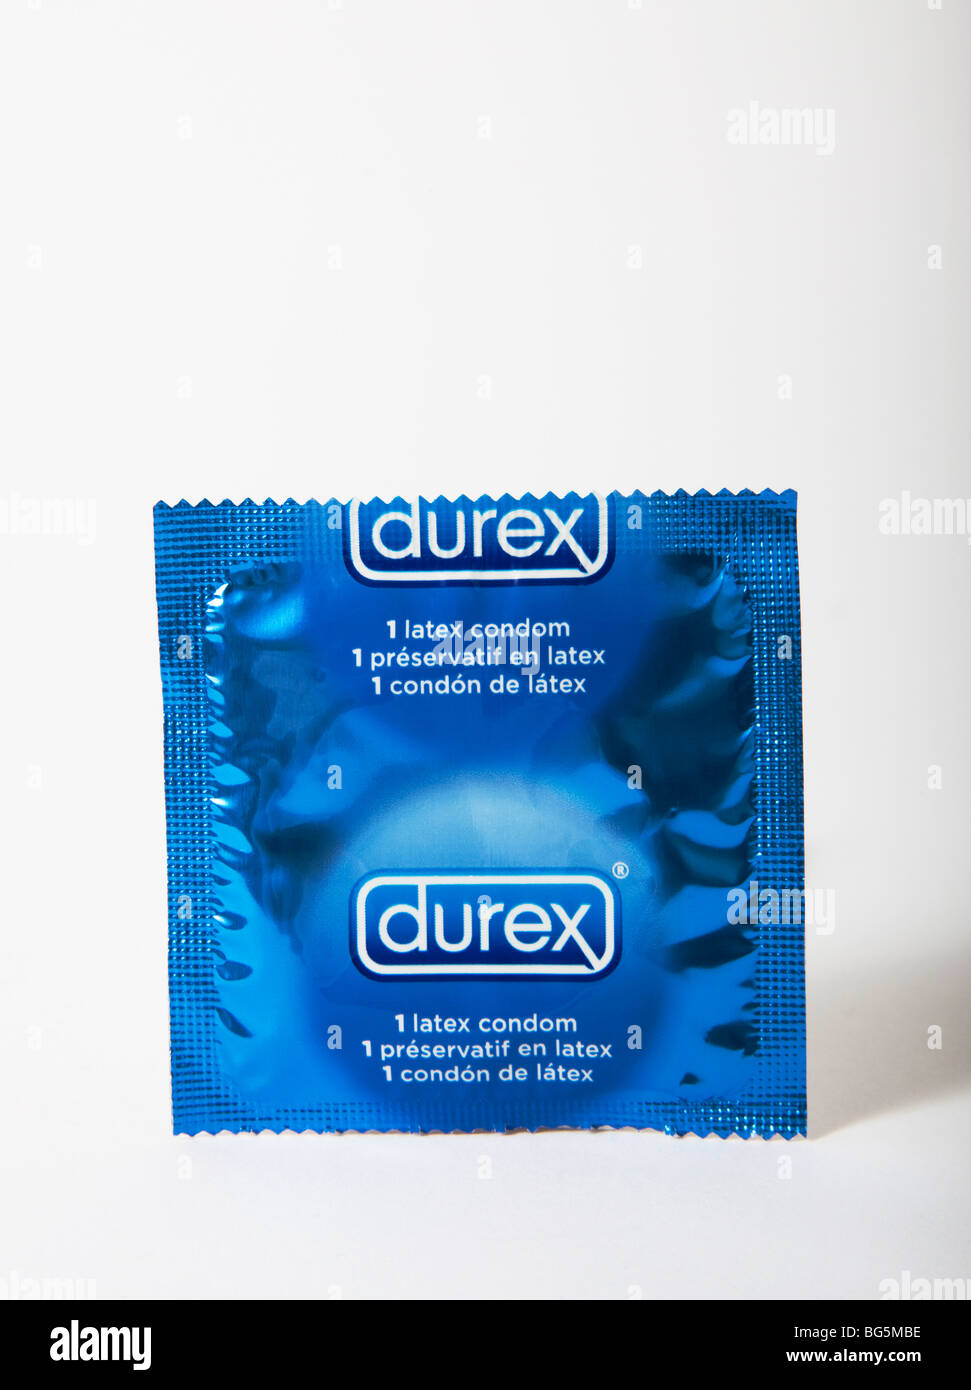 Durex condom immagini e fotografie stock ad alta risoluzione - Alamy